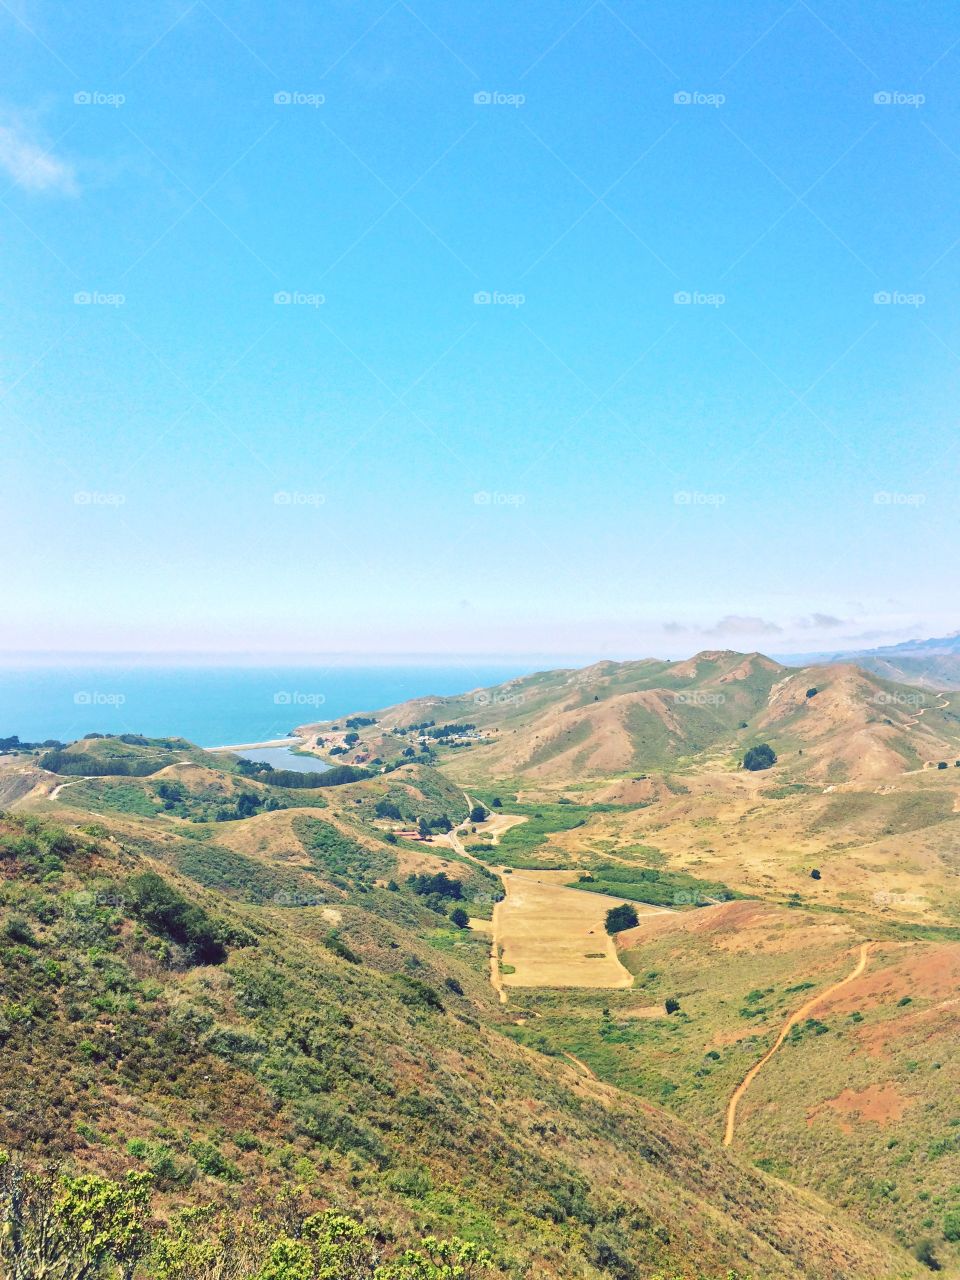 San Francisco Bay Area landscape ocean view